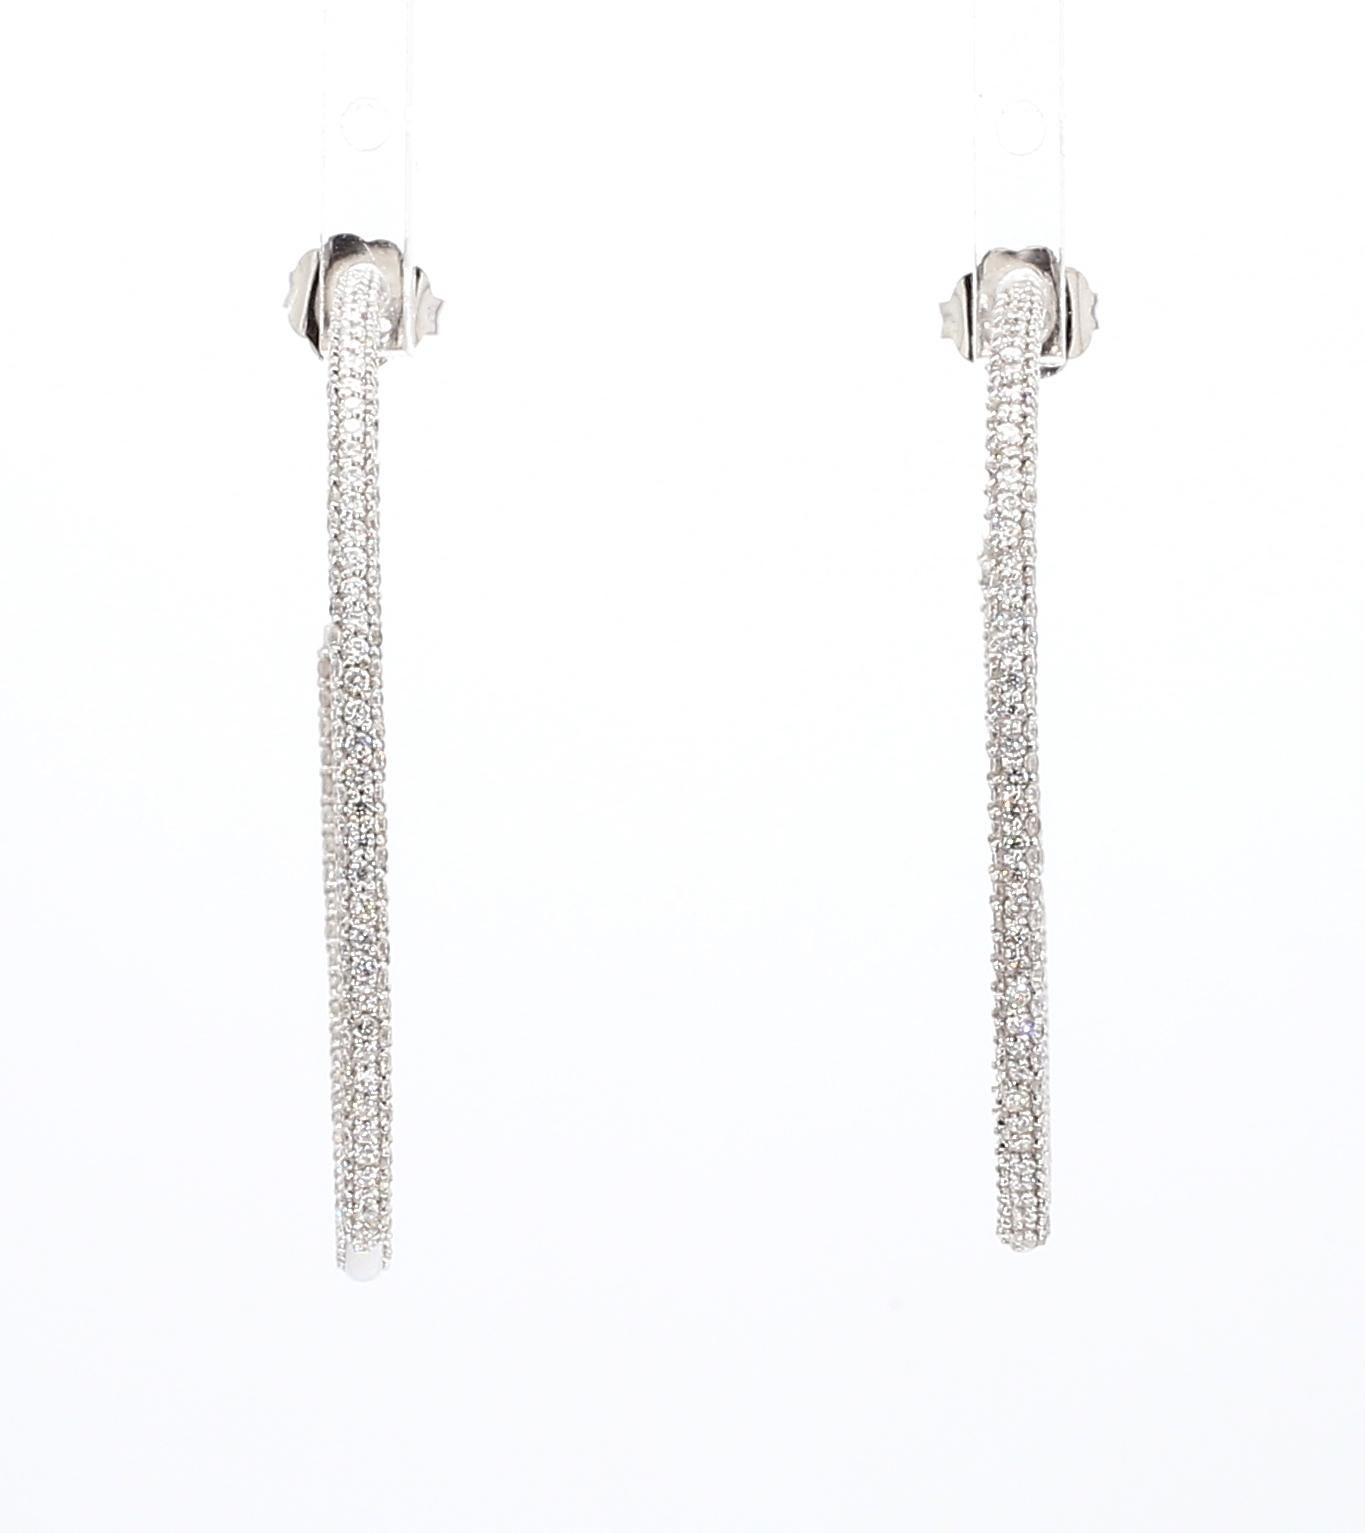 Round Cut Natural Diamond Hoop Earrings 2.14ctw Inside Out Hoop Earrings Three Row 14K WG For Sale